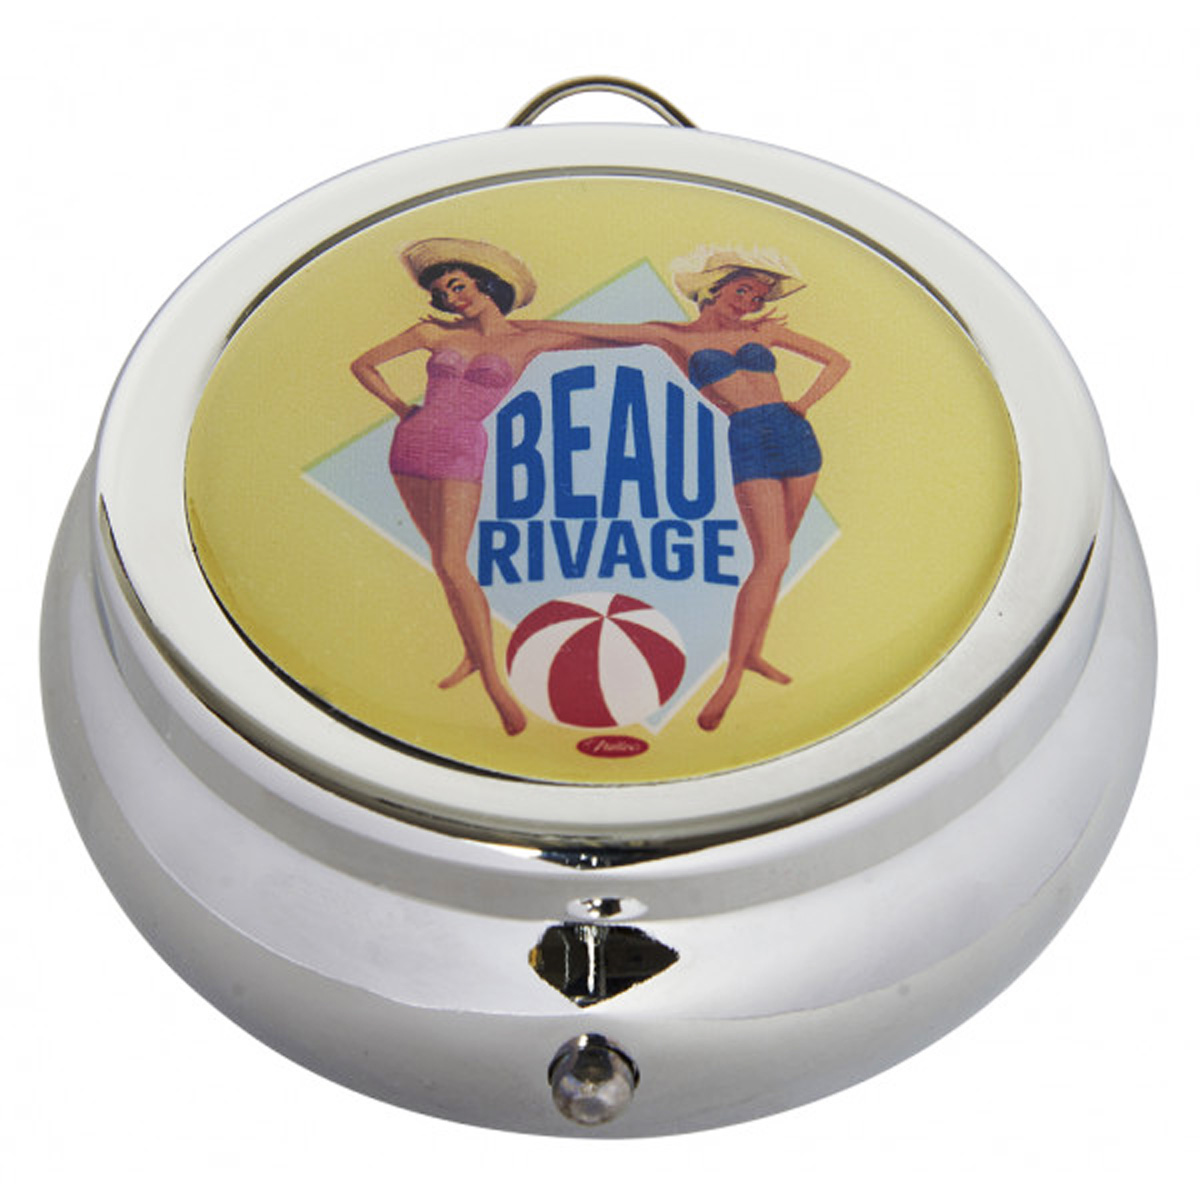 Cendrier de poche \'French Vintage\' (Beau Rivage) - 68x30 mm - [Q7158]